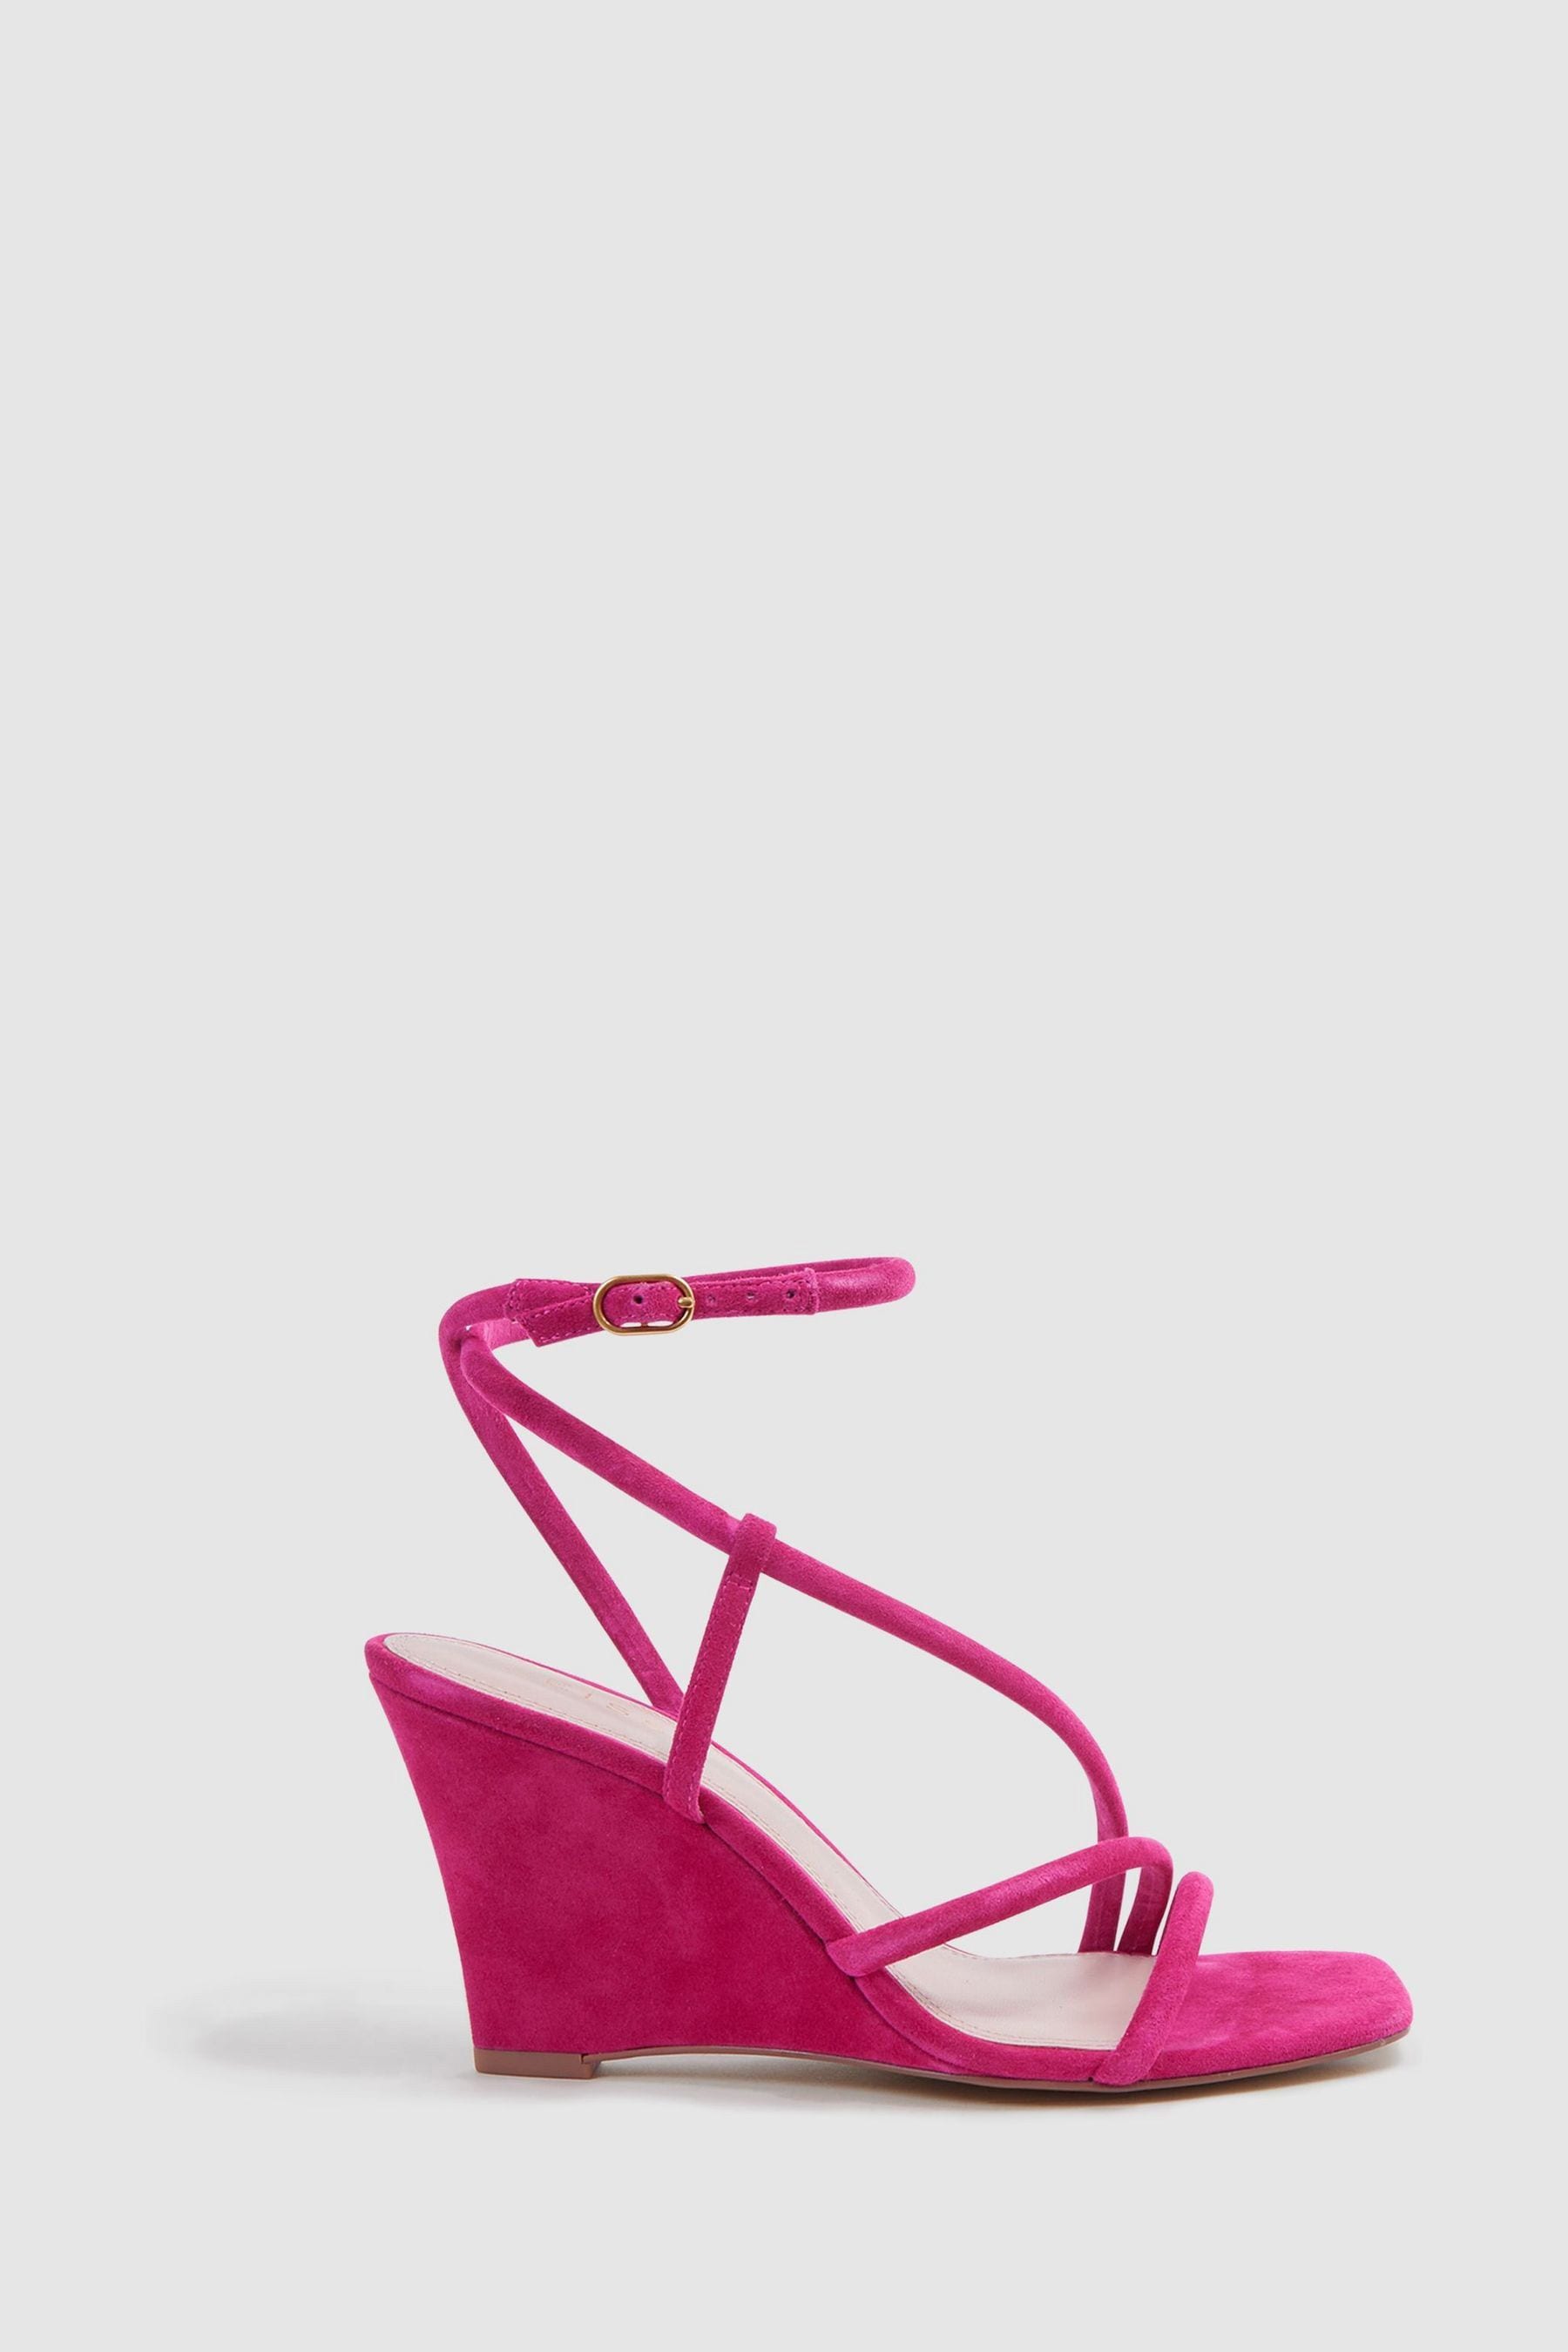 Cassie - Pink Suede Strappy Wedge Heels